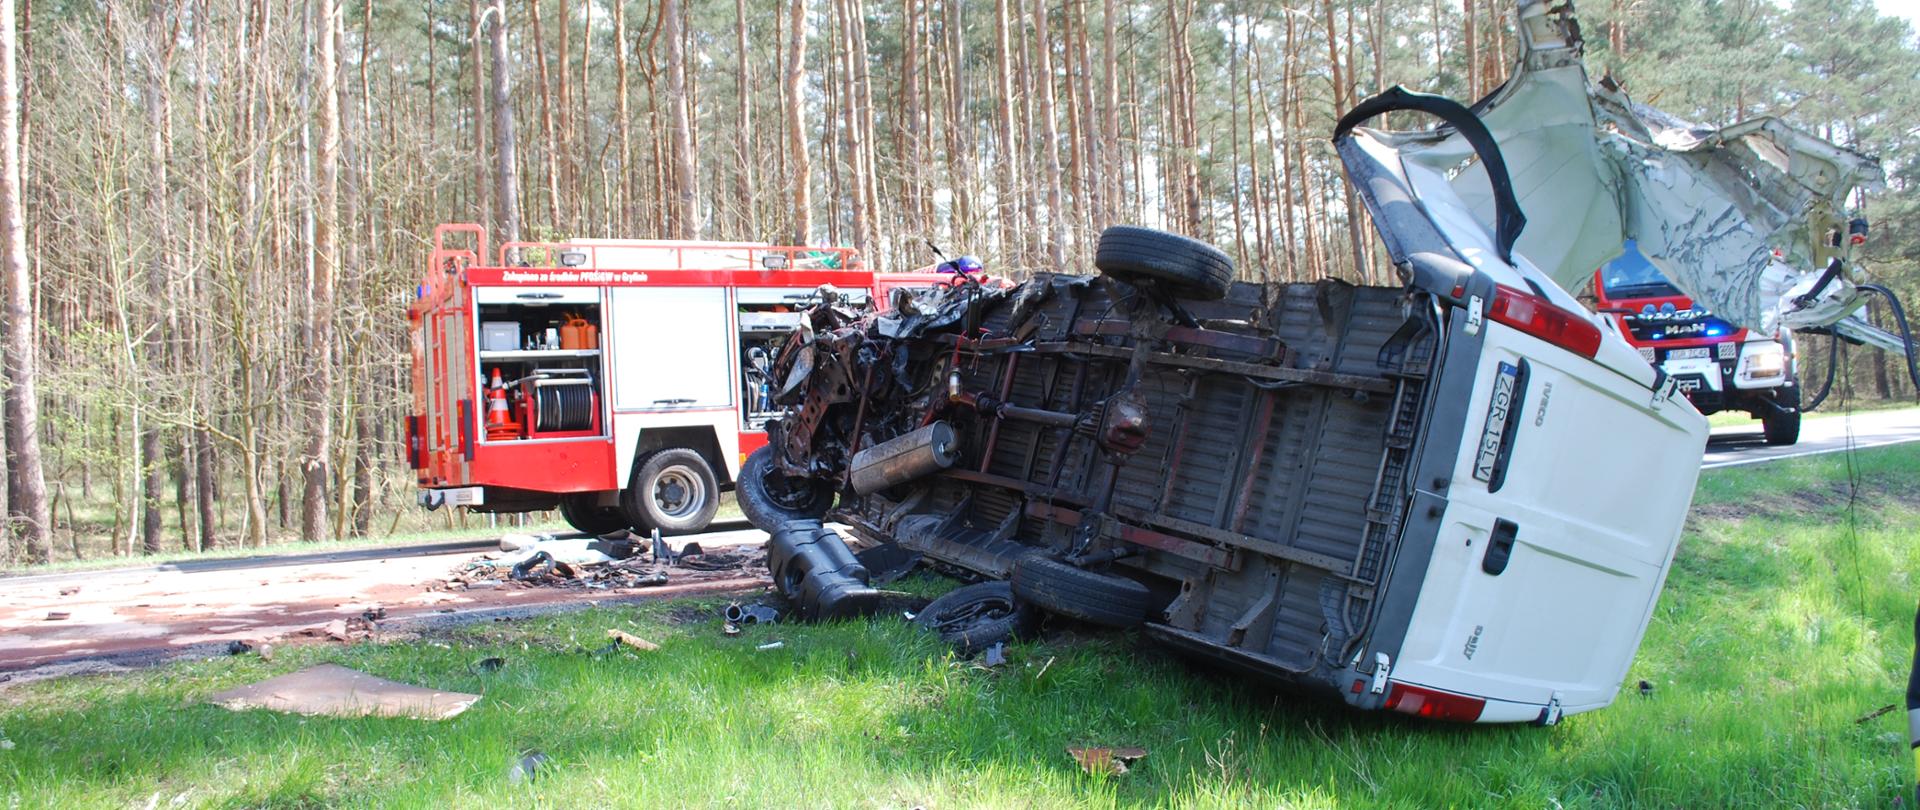 Zdjęcie przedstawia przewrócony na prawy bok wrak pojazdu dostawczego znajdujący się częściowo na poboczu drogi, w tle na jezdni widać dwa pojazdy pożarnicze